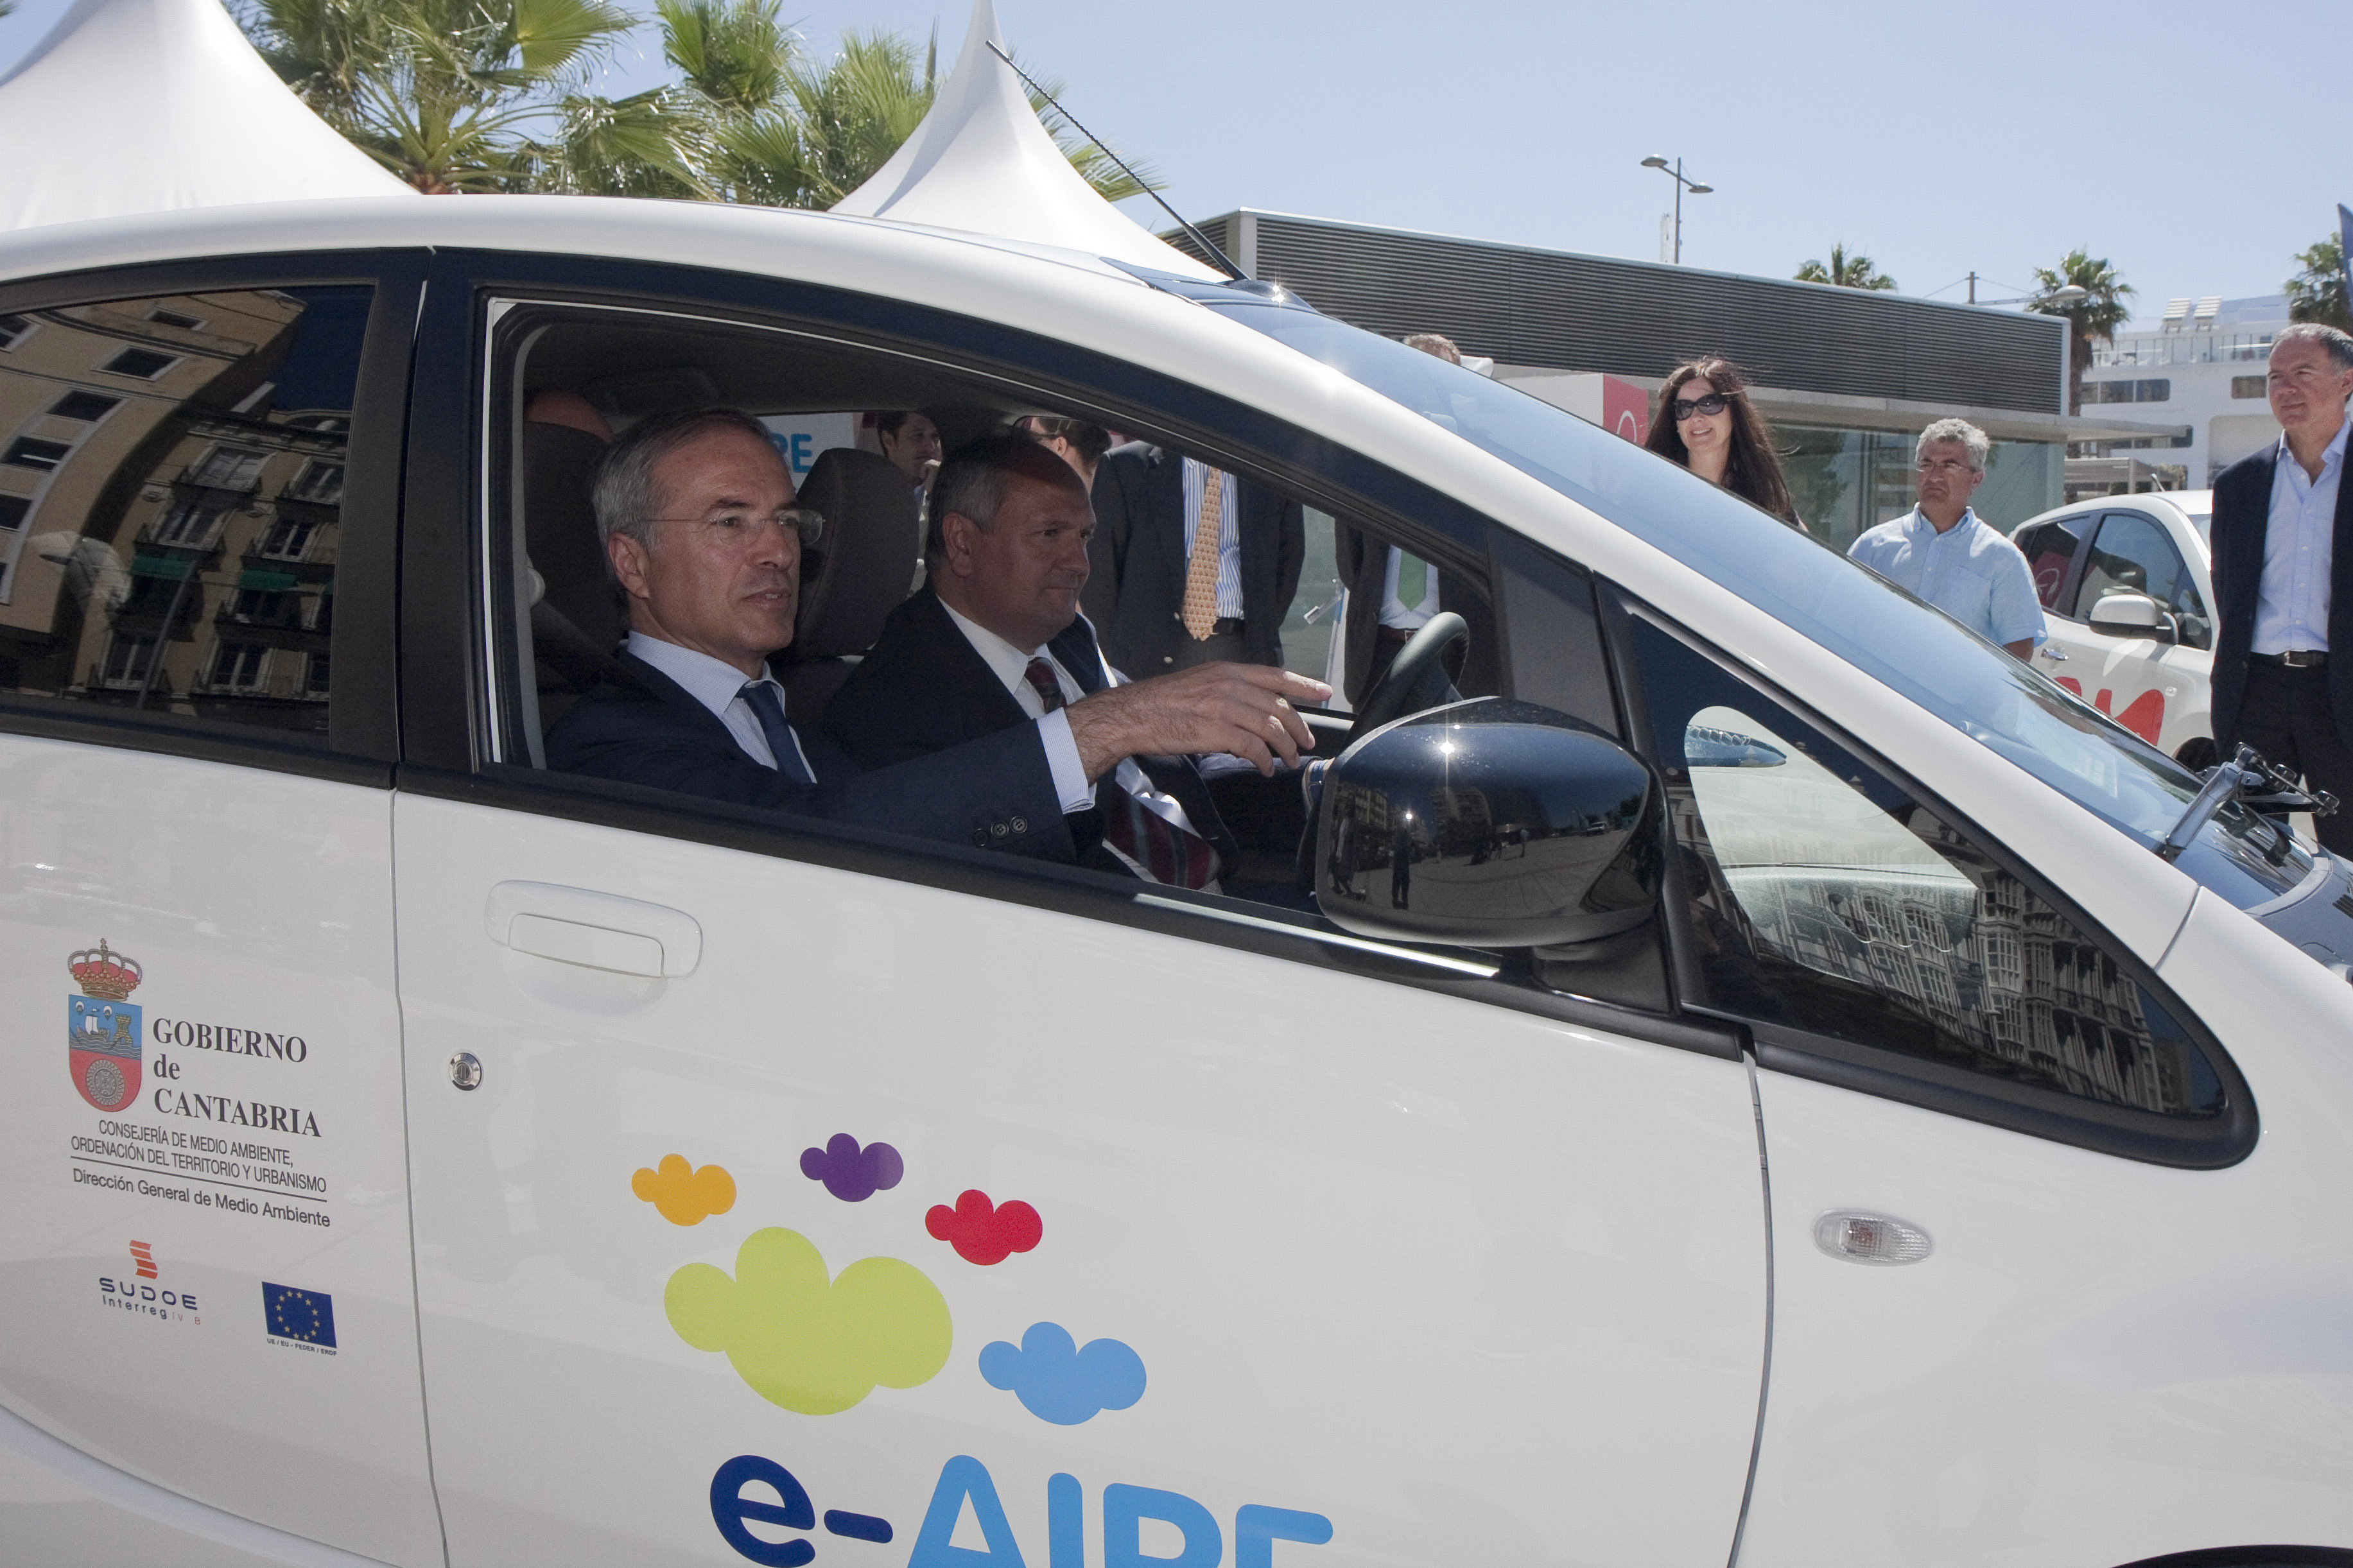 e-AIRE: cinco puntos de recarga para vehículos eléctricos